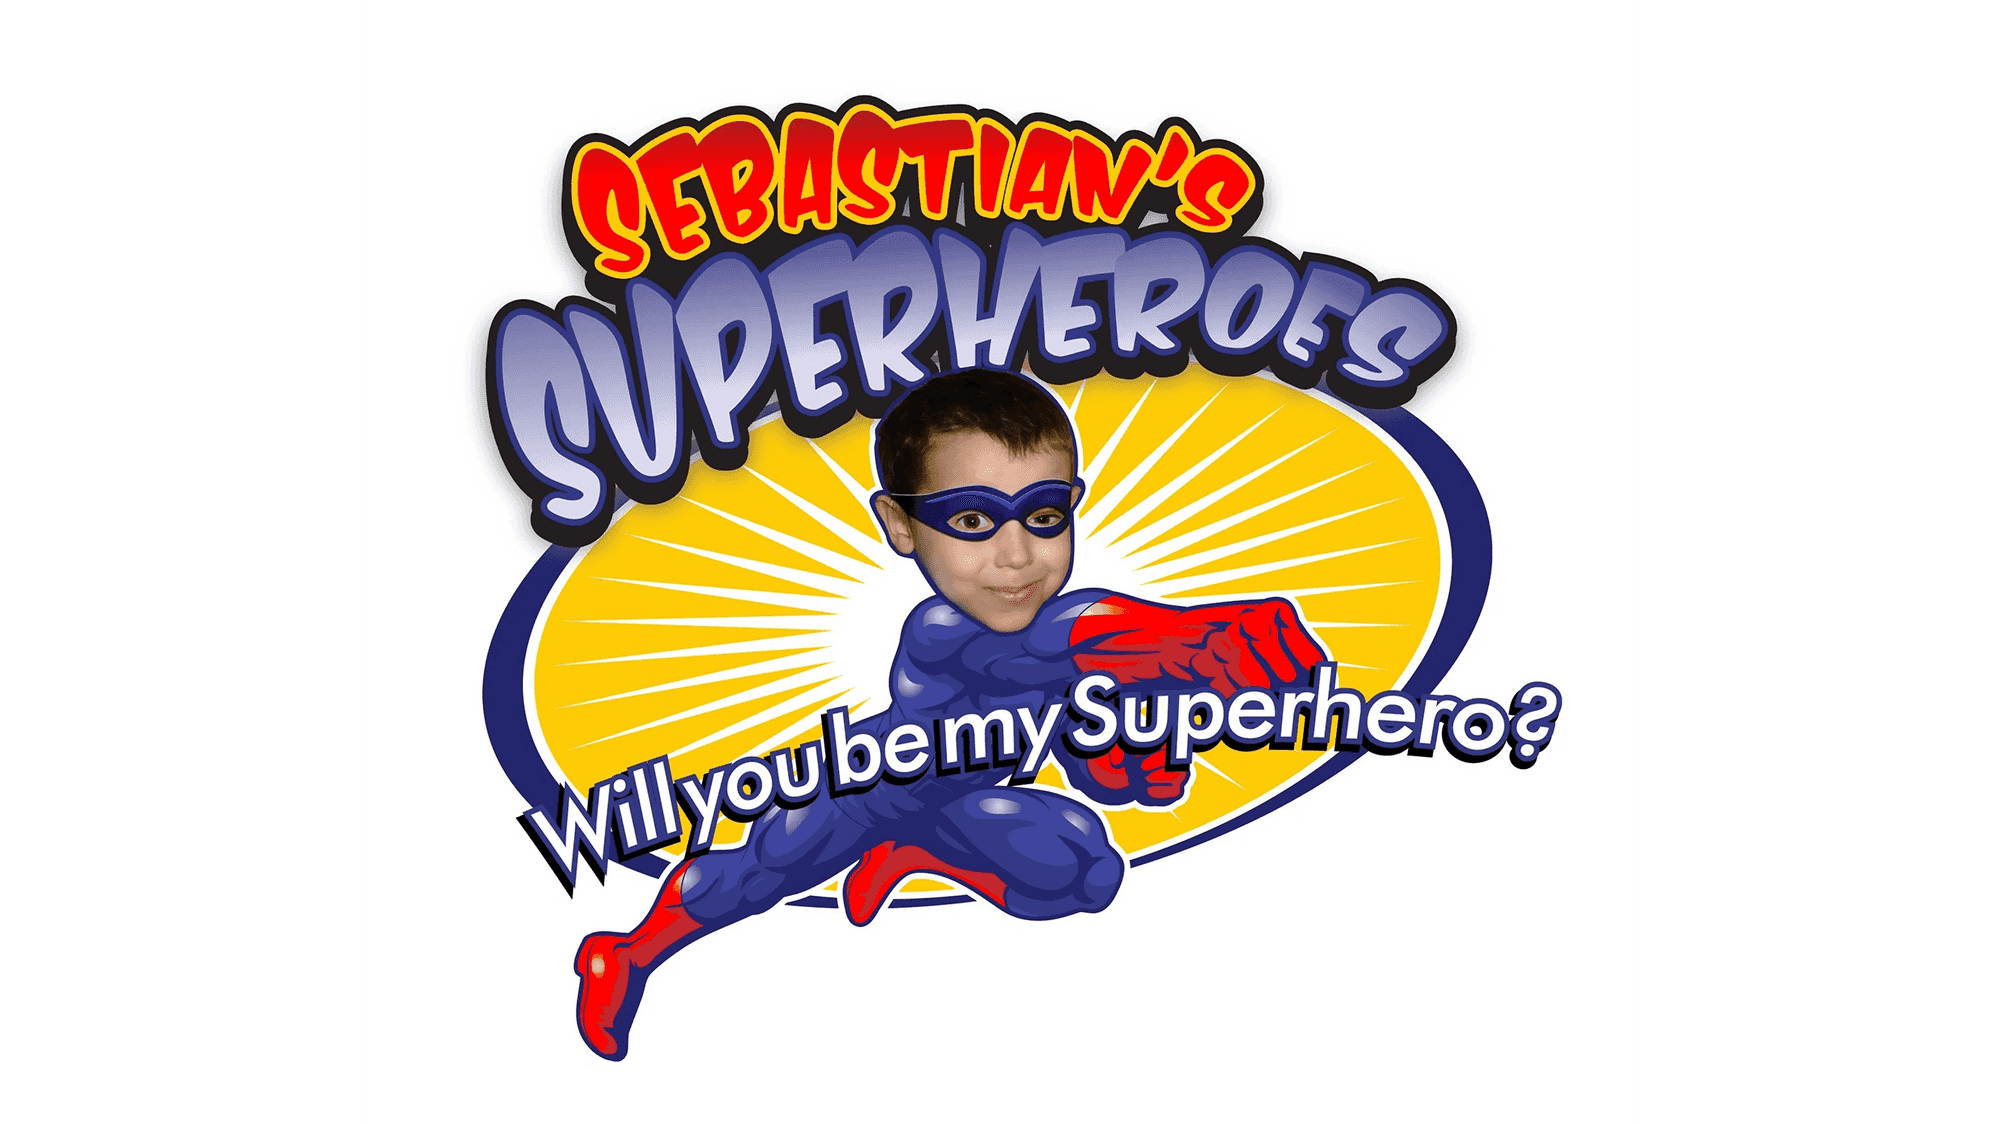 Sebastian's Superheroes's Logo